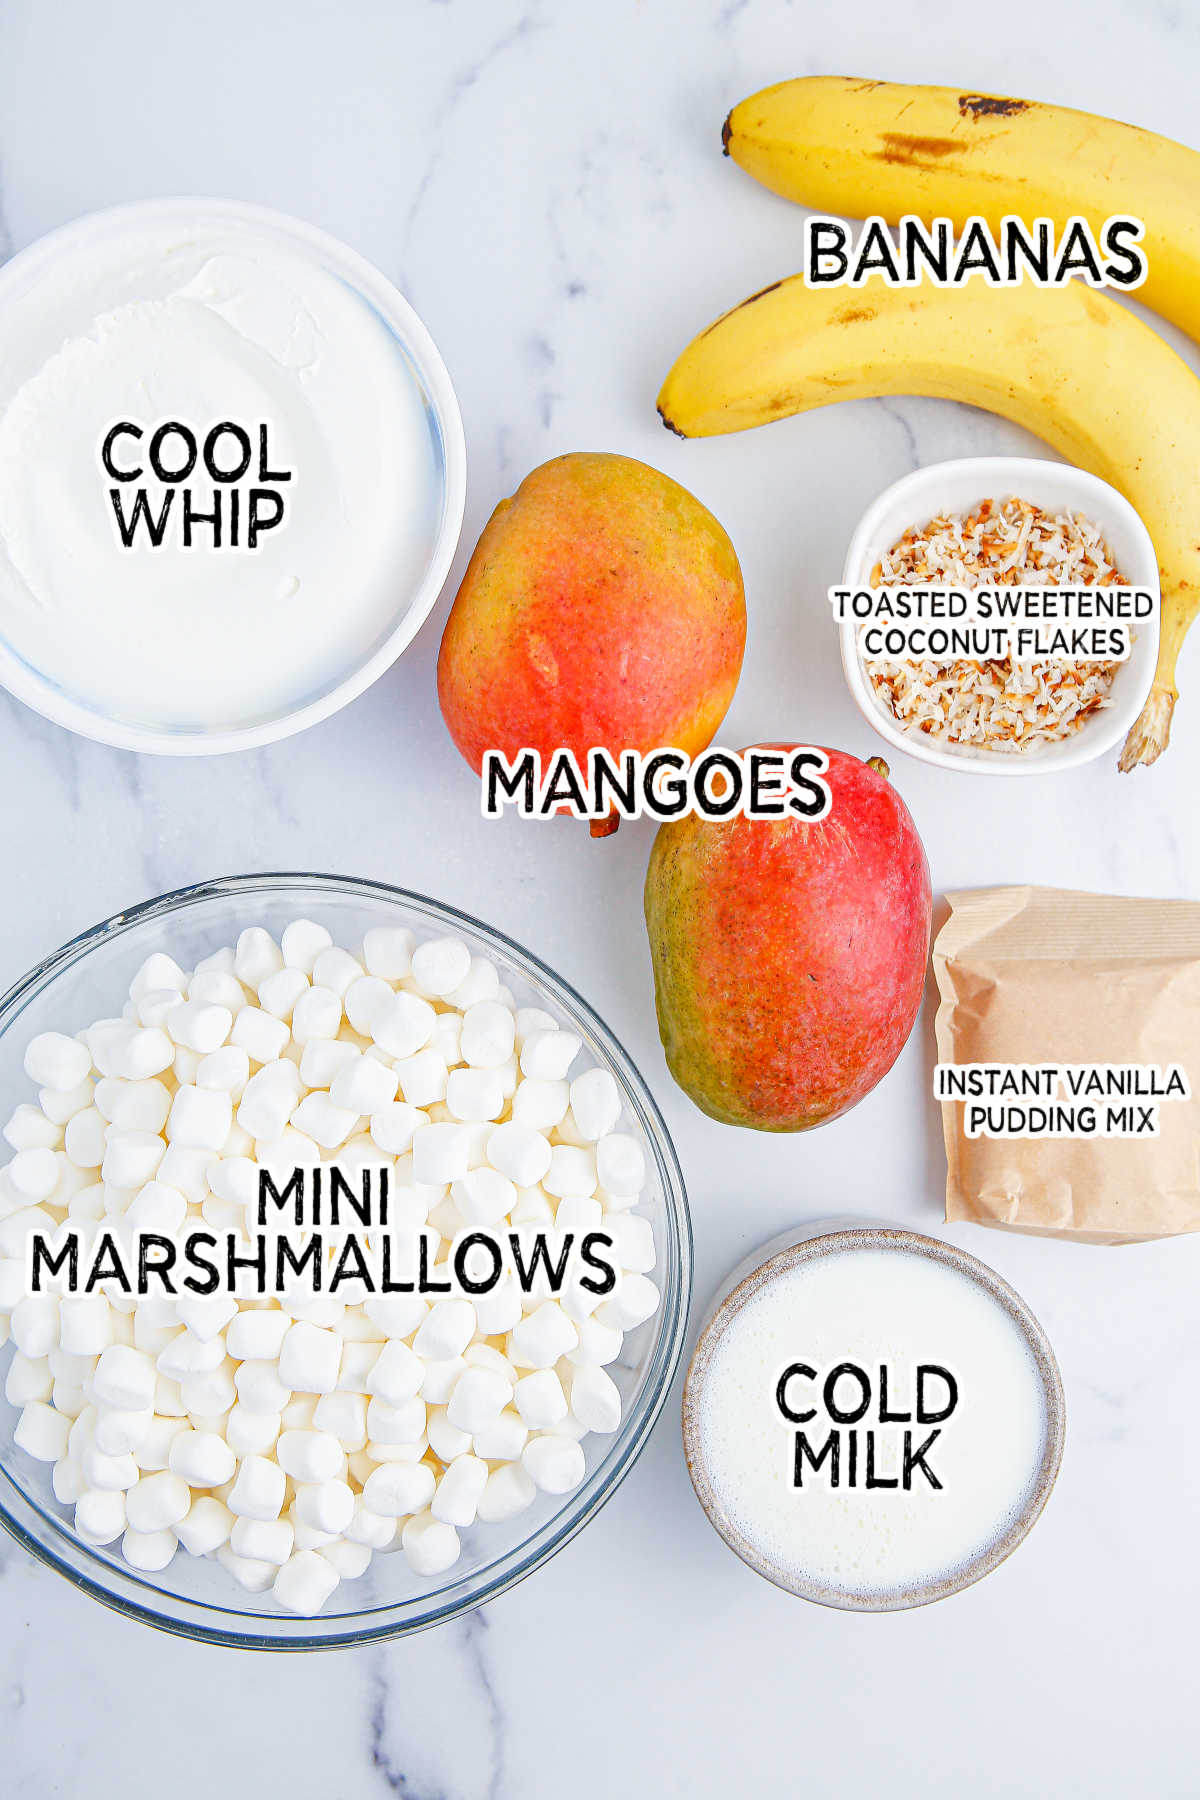 Ingredients to make mango banana marshmallow salad.